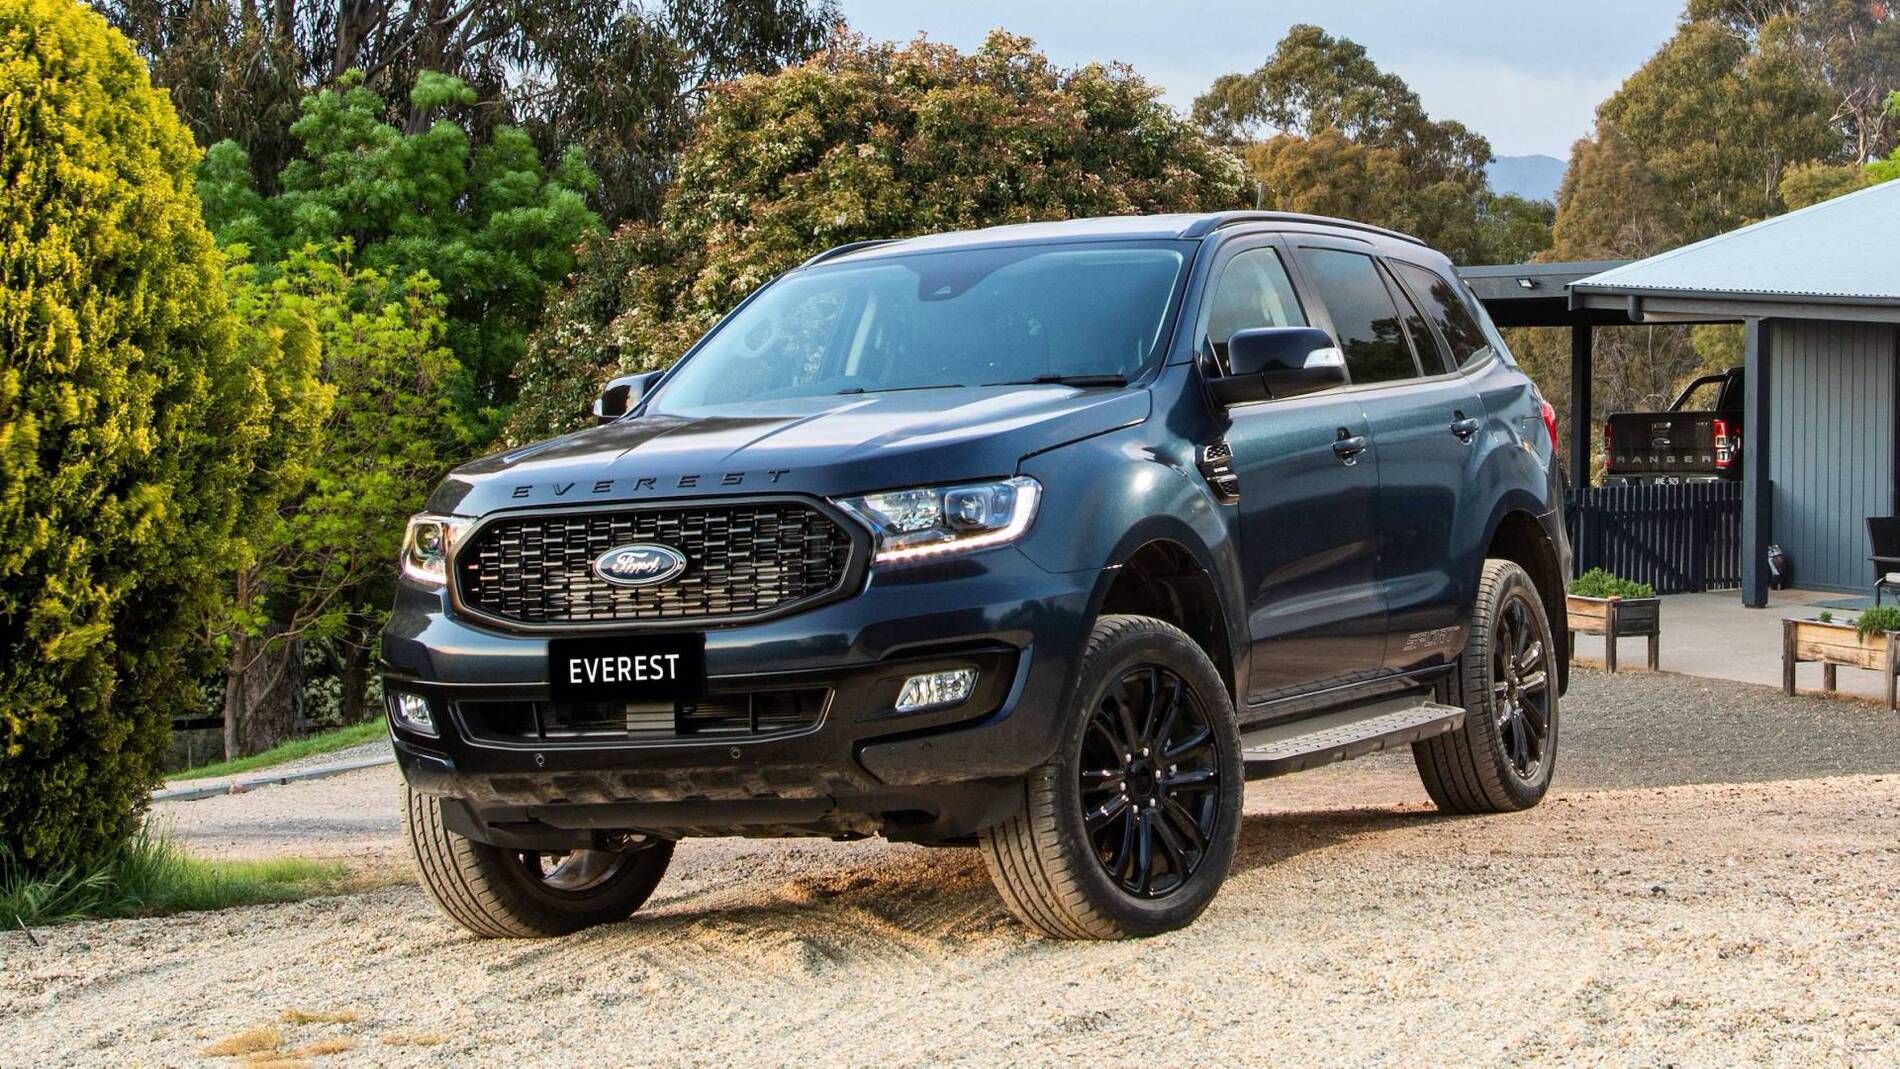 2020-Ford-Everest-Sport-Australia-spec-6.jpg